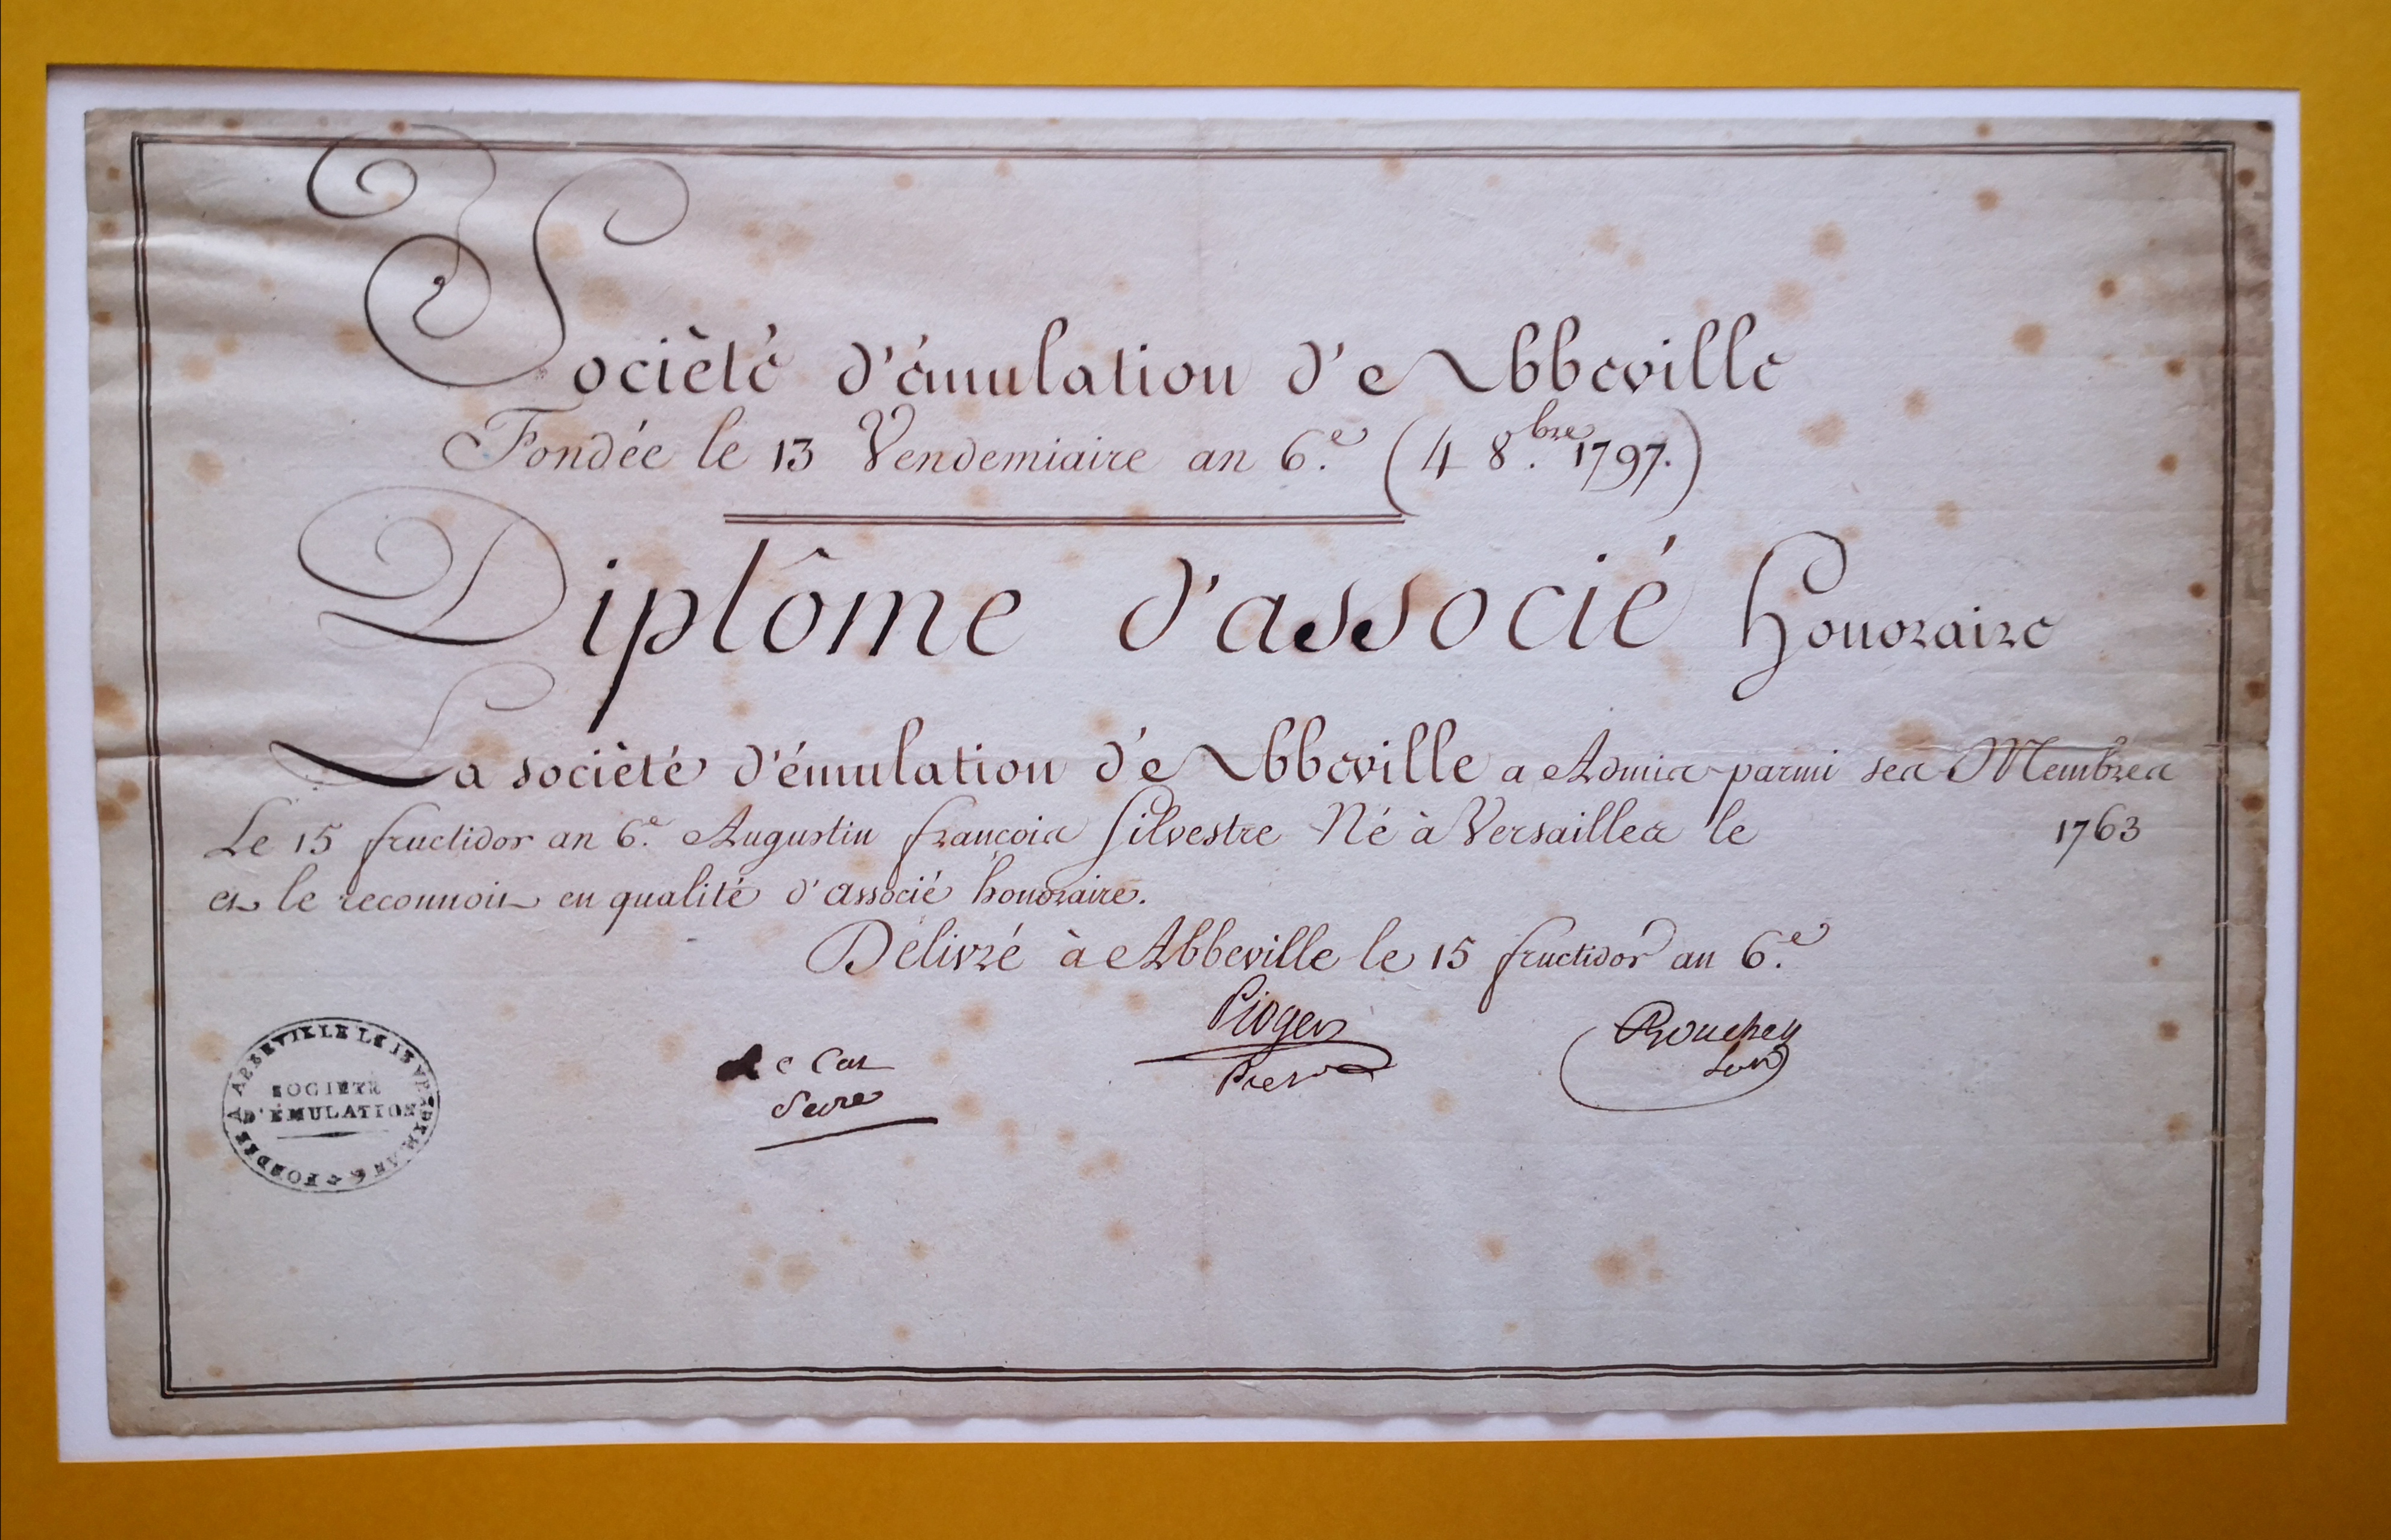  Diplôme d'associé honoraire de la Société d'Emulation de Abbeville - Document 1